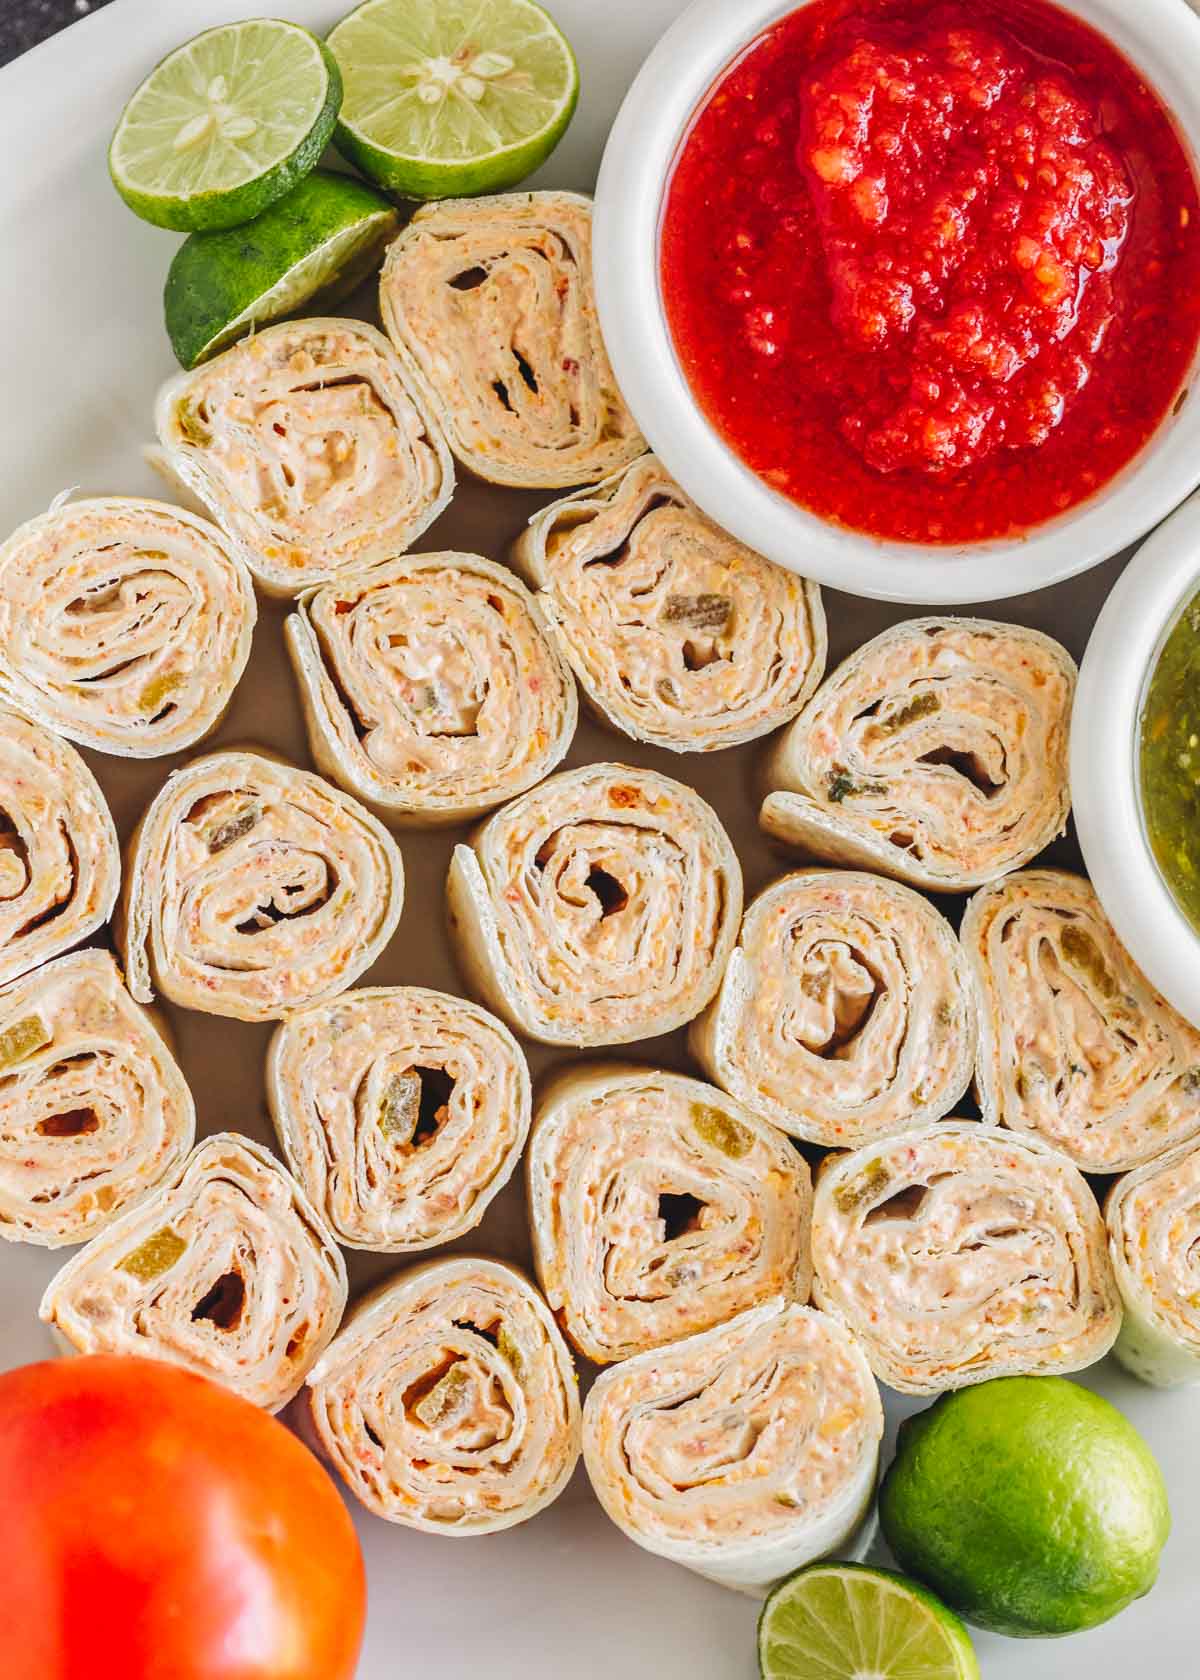 Fiesta pinwheel appetizers on a platter with salsa